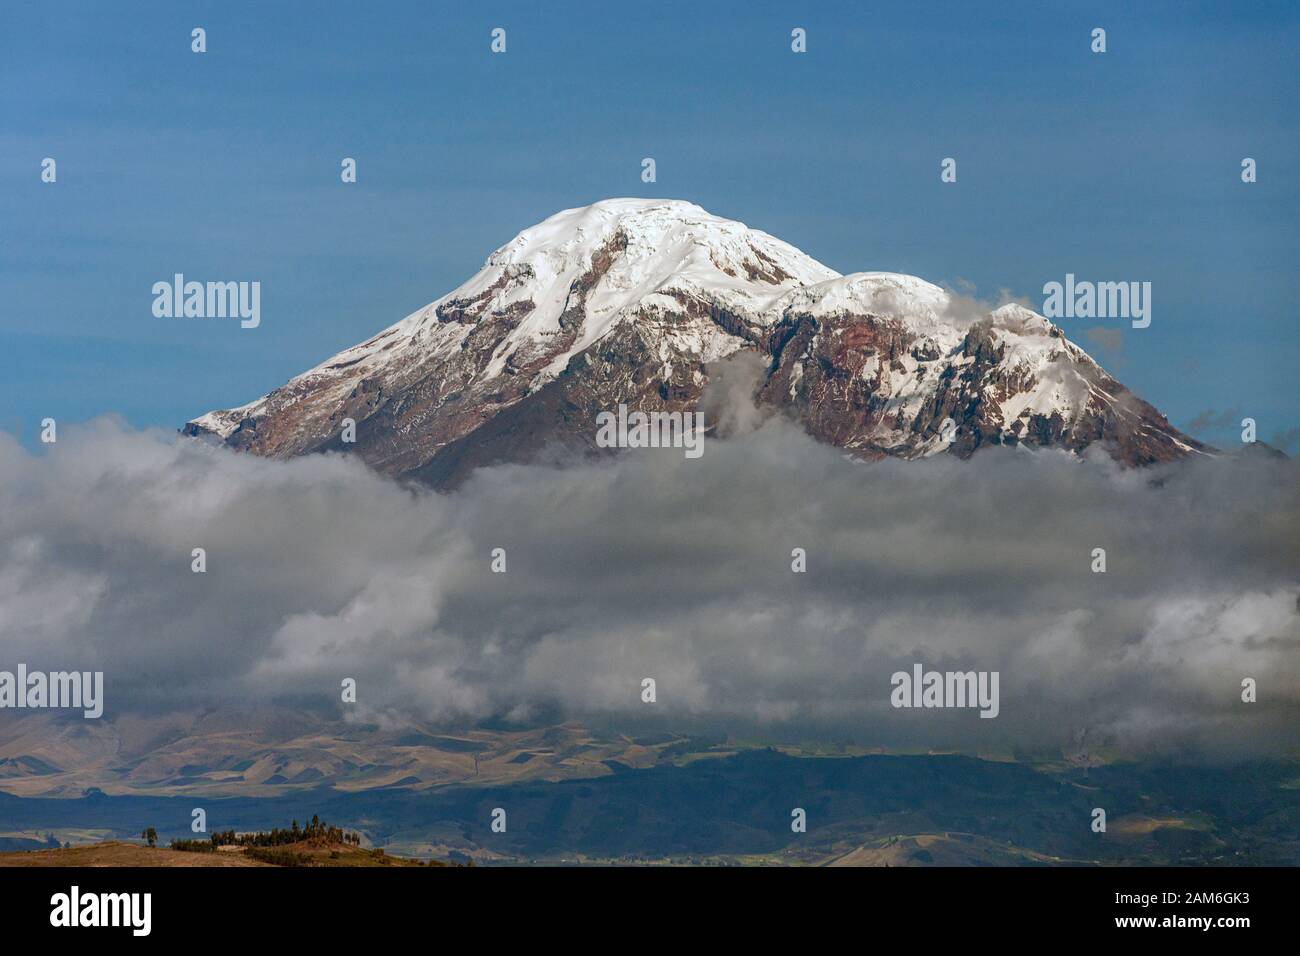 Monte Chimborazo (6268m), la montaña más alta del Ecuador y el punto más alto de la Tierra cuando se mide desde el centro de la Tierra. Foto de stock